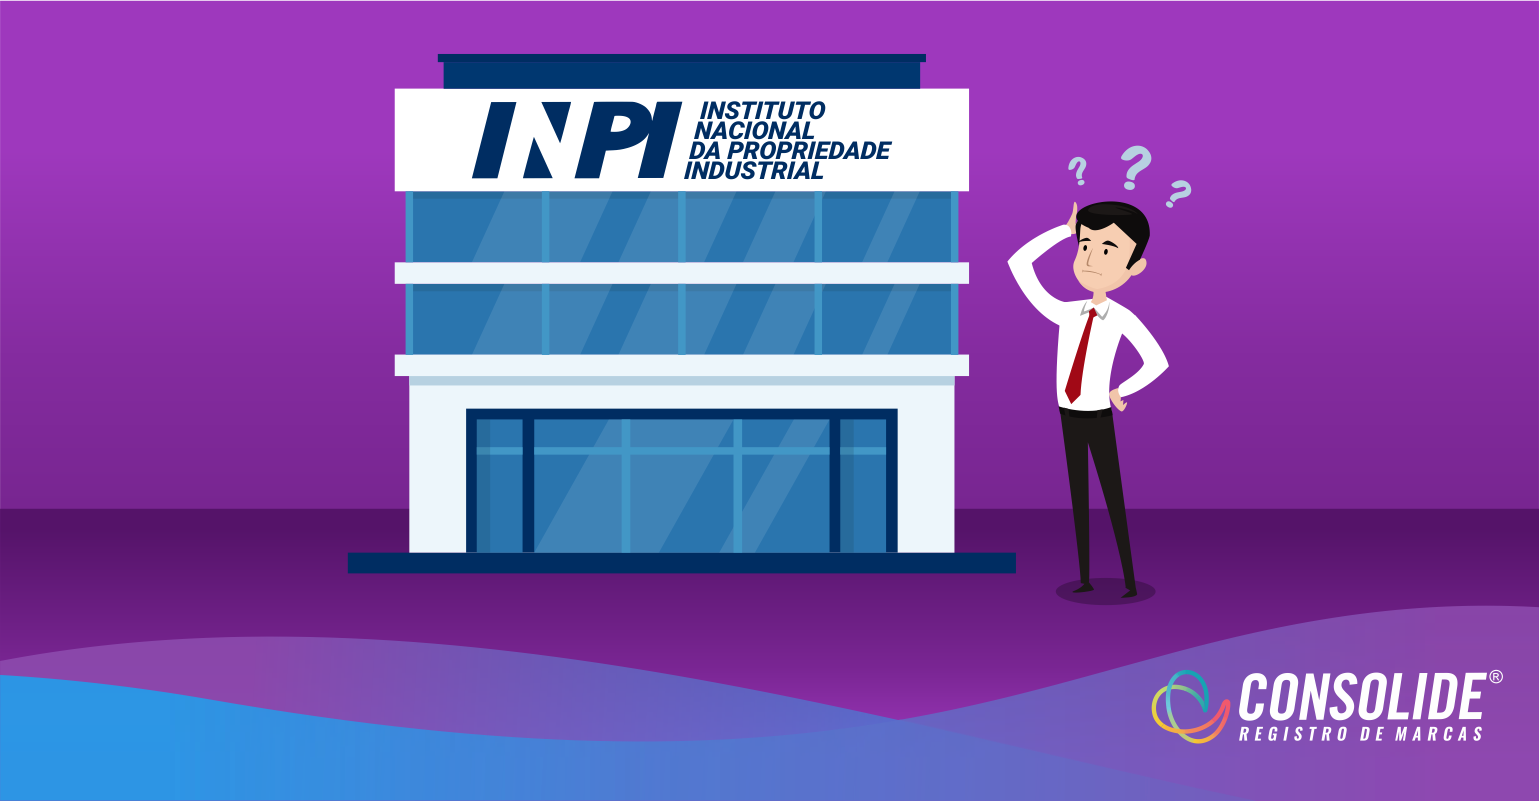 INPI disponibiliza lista dos códigos de despachos de marcas — Instituto  Nacional da Propriedade Industrial